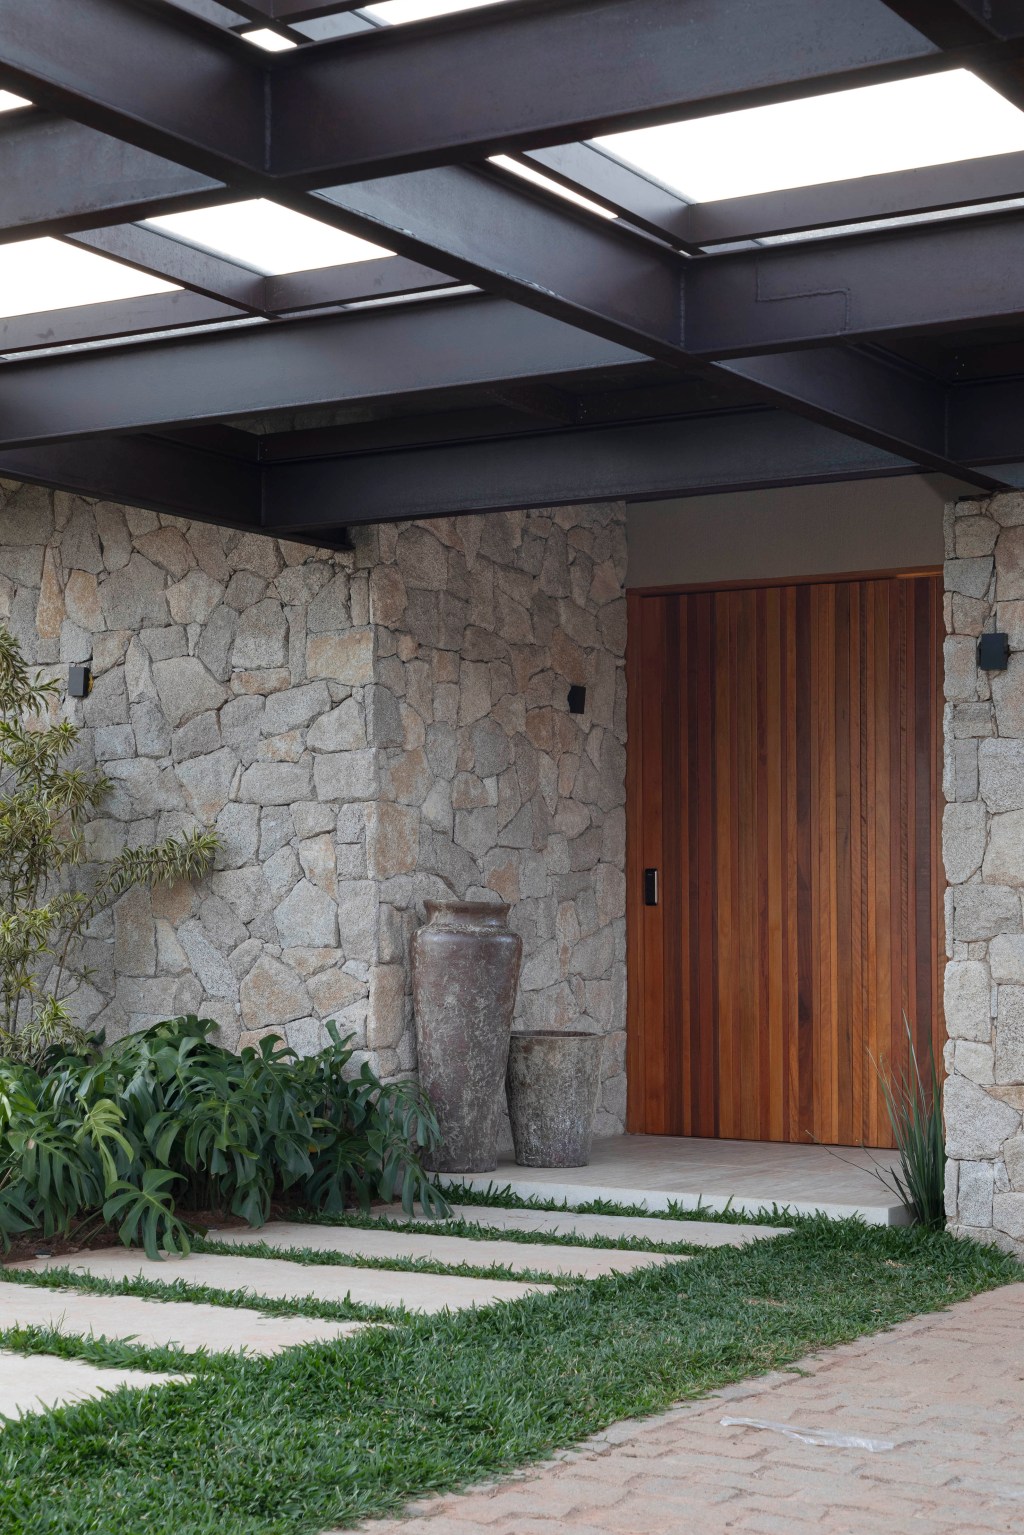 Casa de campo de 800 m² em Petrópolis ganha décor com cara de montanha. Projeto de João Panaggio. Na foto, fachada com pergolado e parede de pedra.